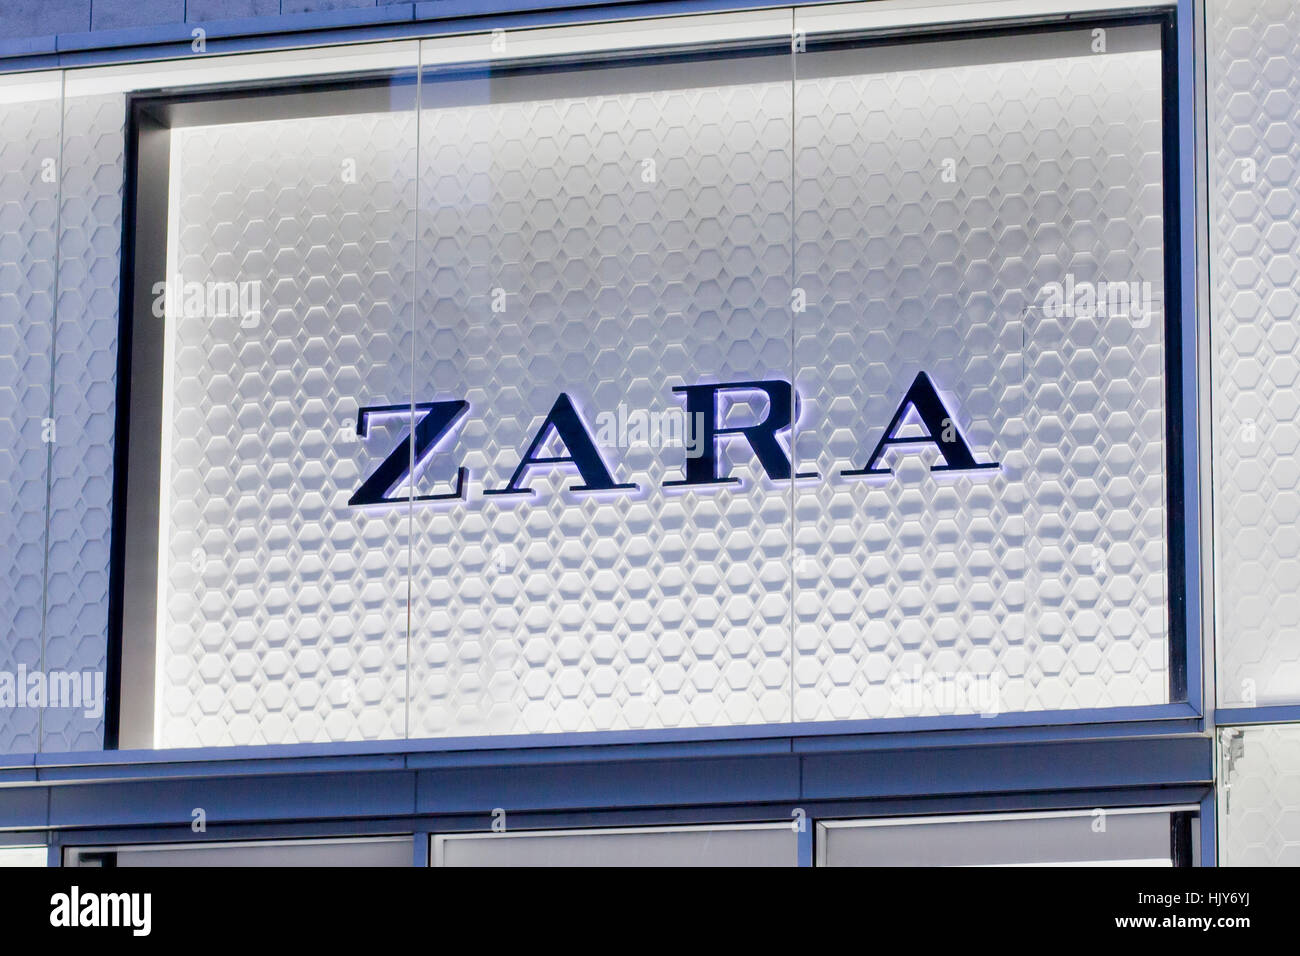 Zara marke -Fotos und -Bildmaterial in hoher Auflösung – Alamy